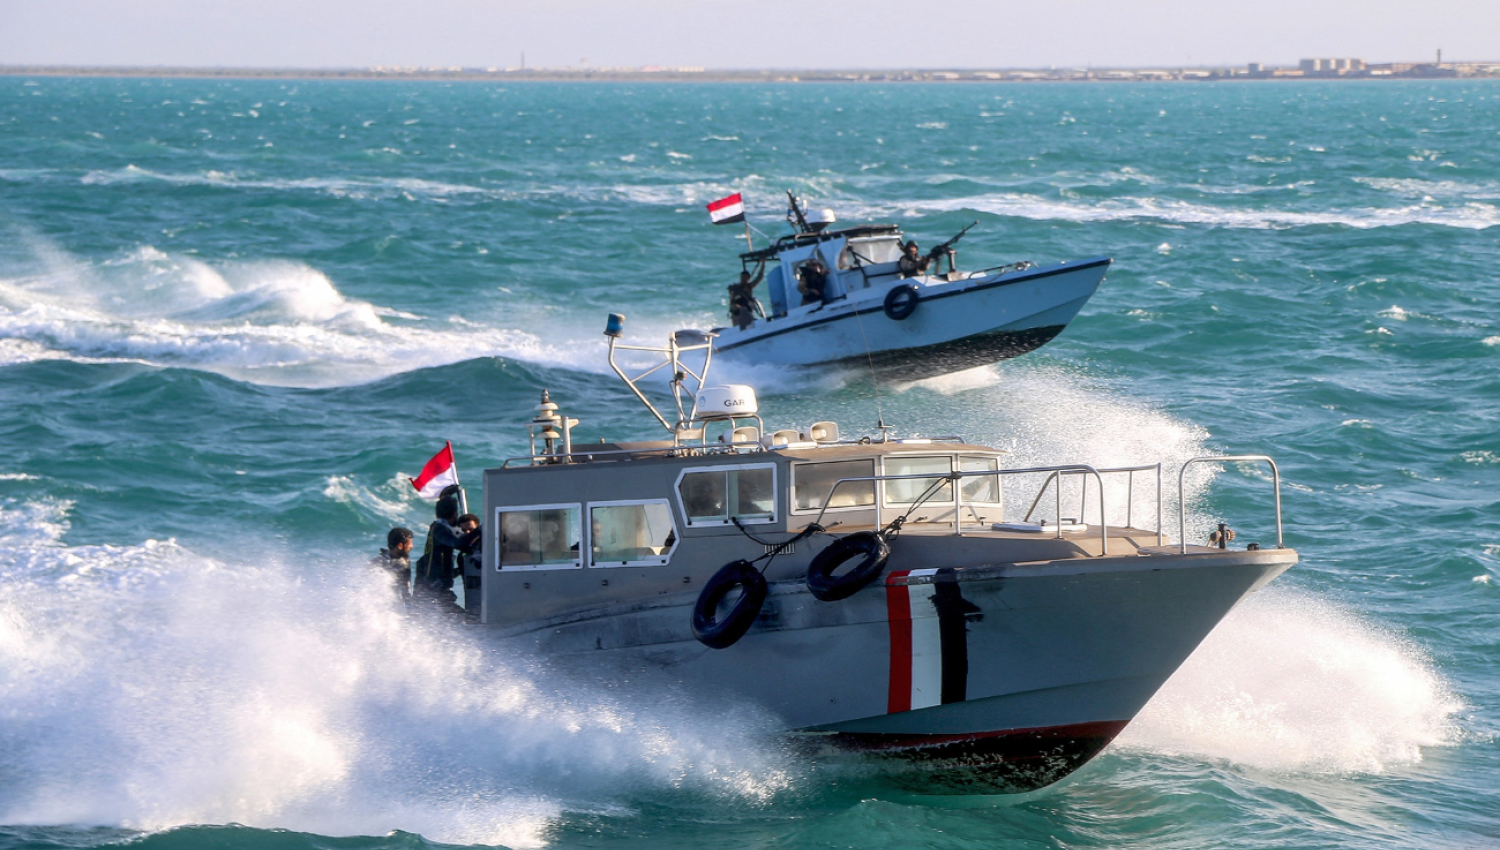 9 دروس مستفادة من الهجمات اليمنية على السفن في البحر الأحمر